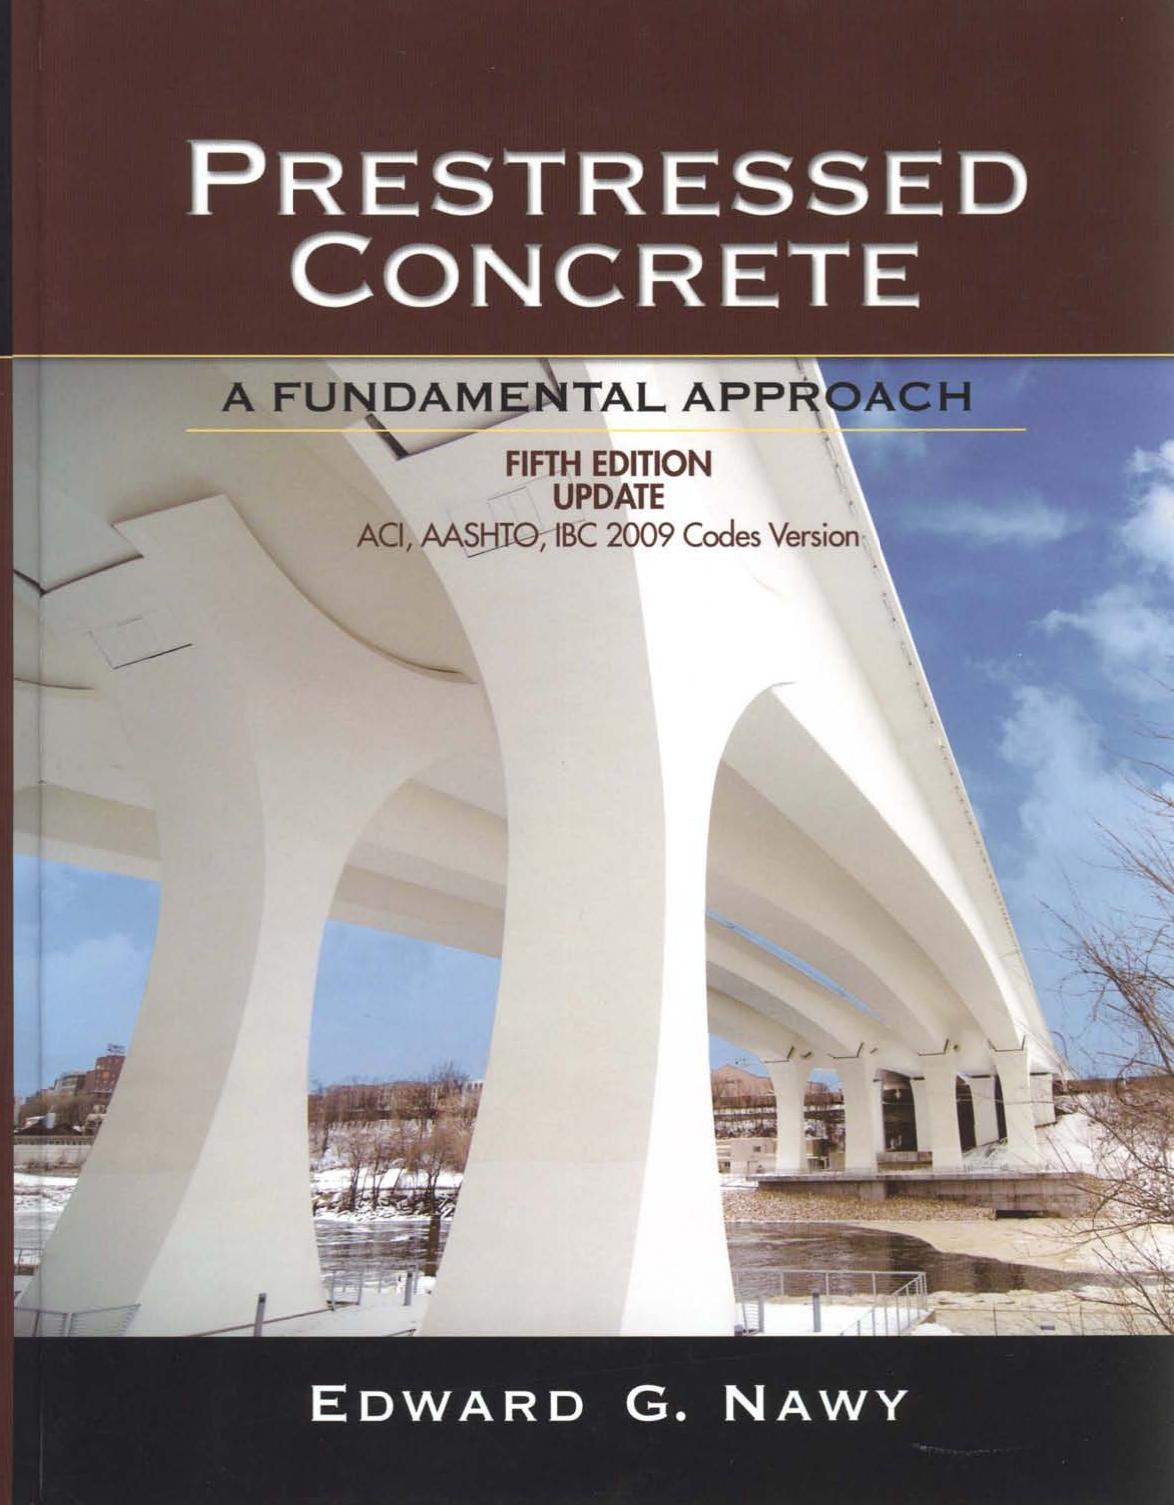 Prestressed Concrete, A Fundamental Approach, 5th ed, Nawy 2010